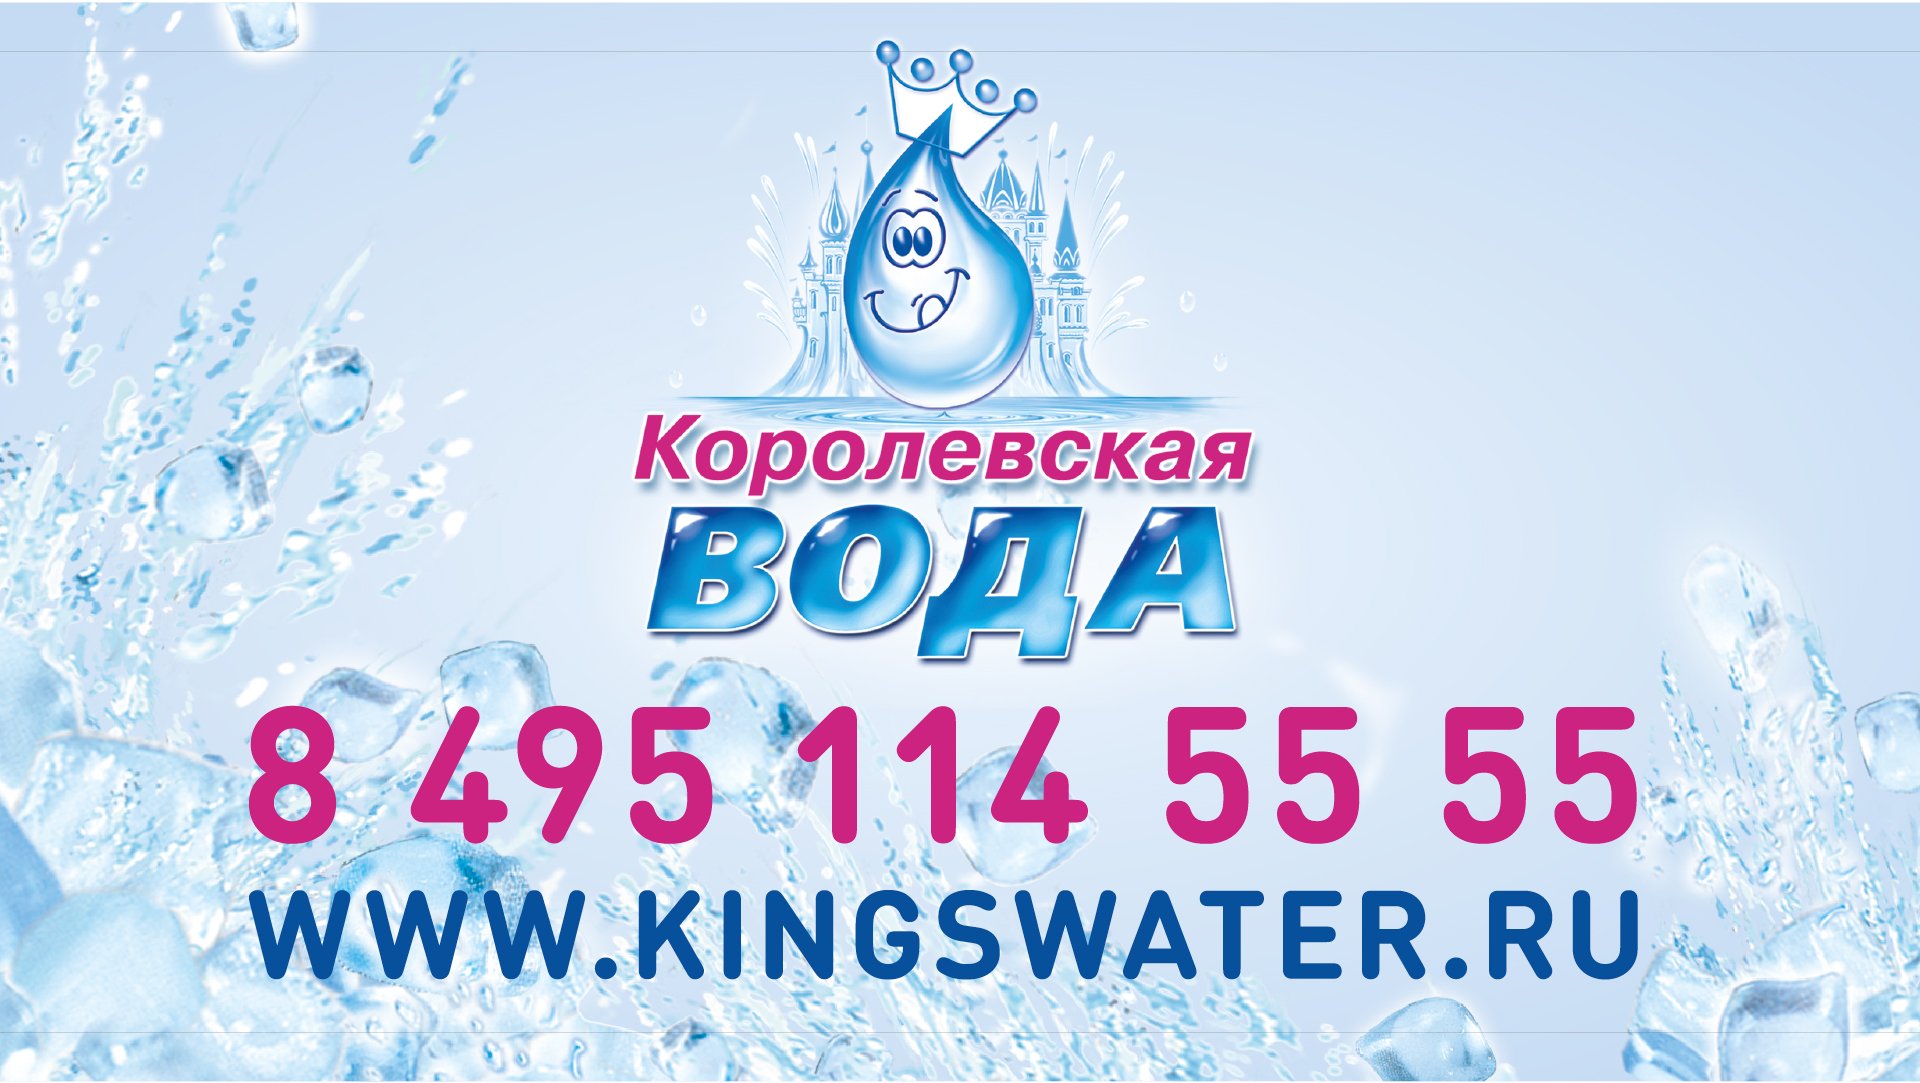 Королевская вода минск. Королевская вода. ООО Королевская вода. Королевская вода логотип. Королевская вода сотрудники.